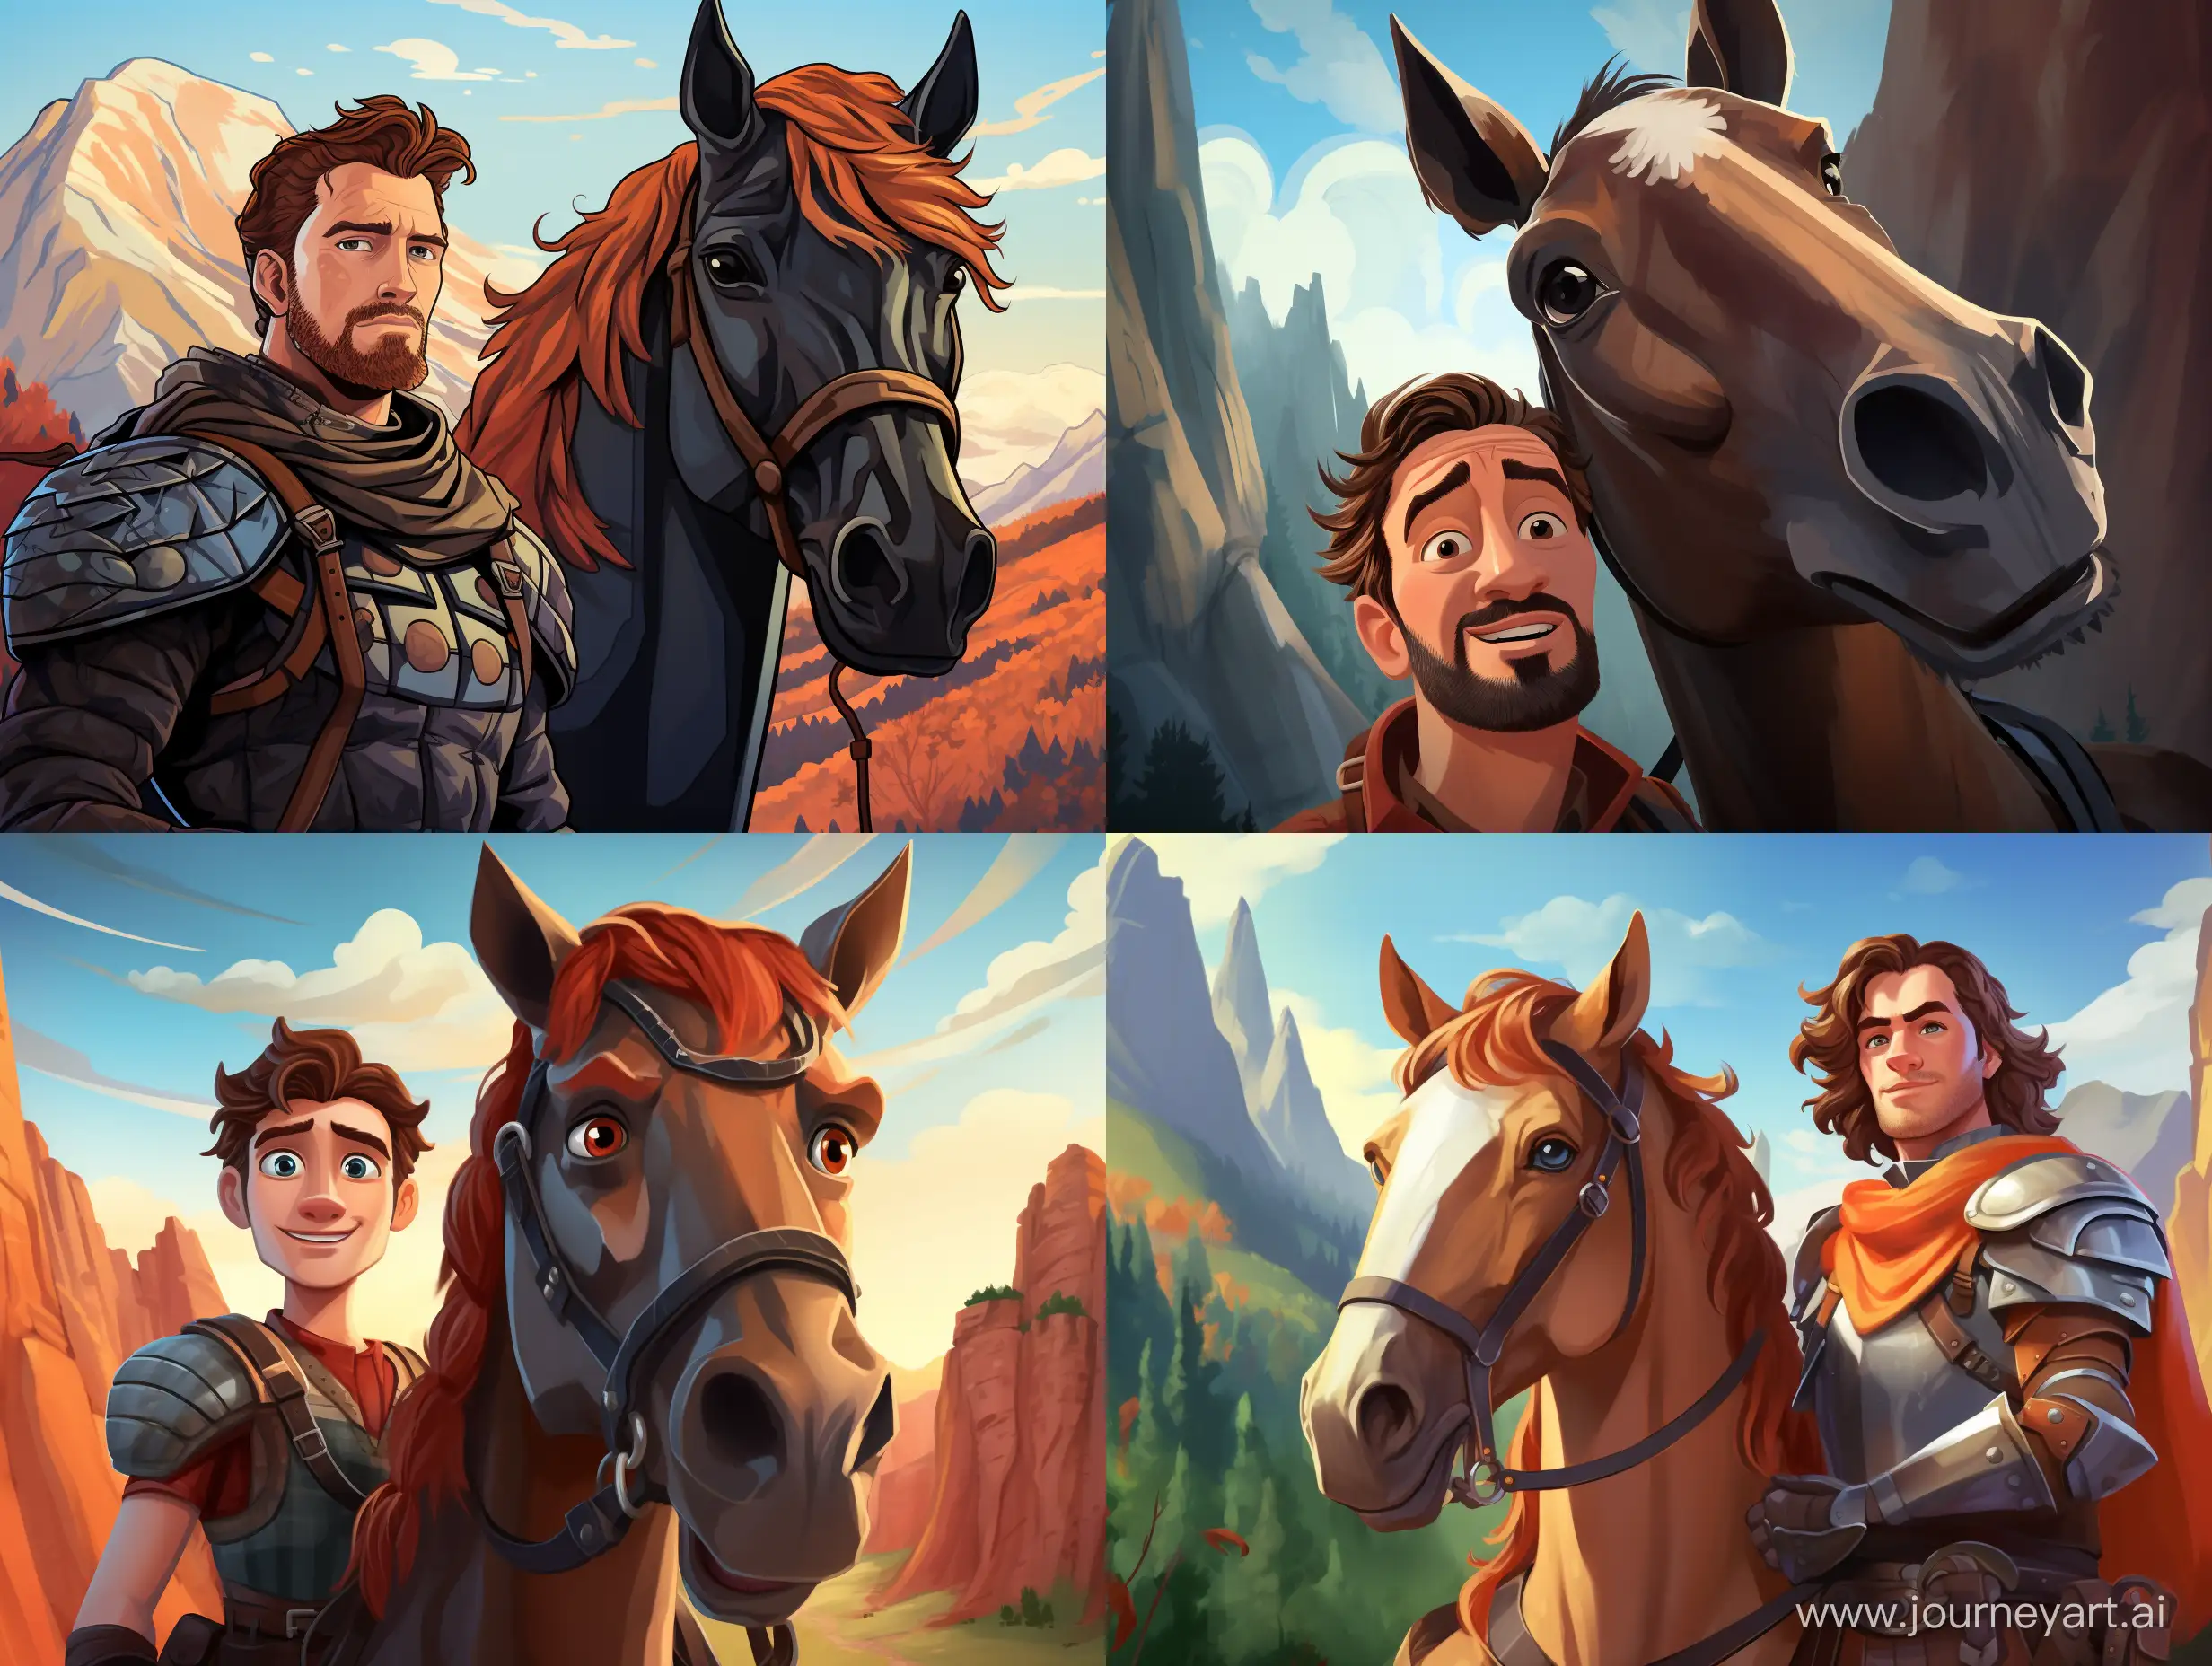 cartoon pixar style of a портрет храбрый мужчина с храбрым конем на фоне гор